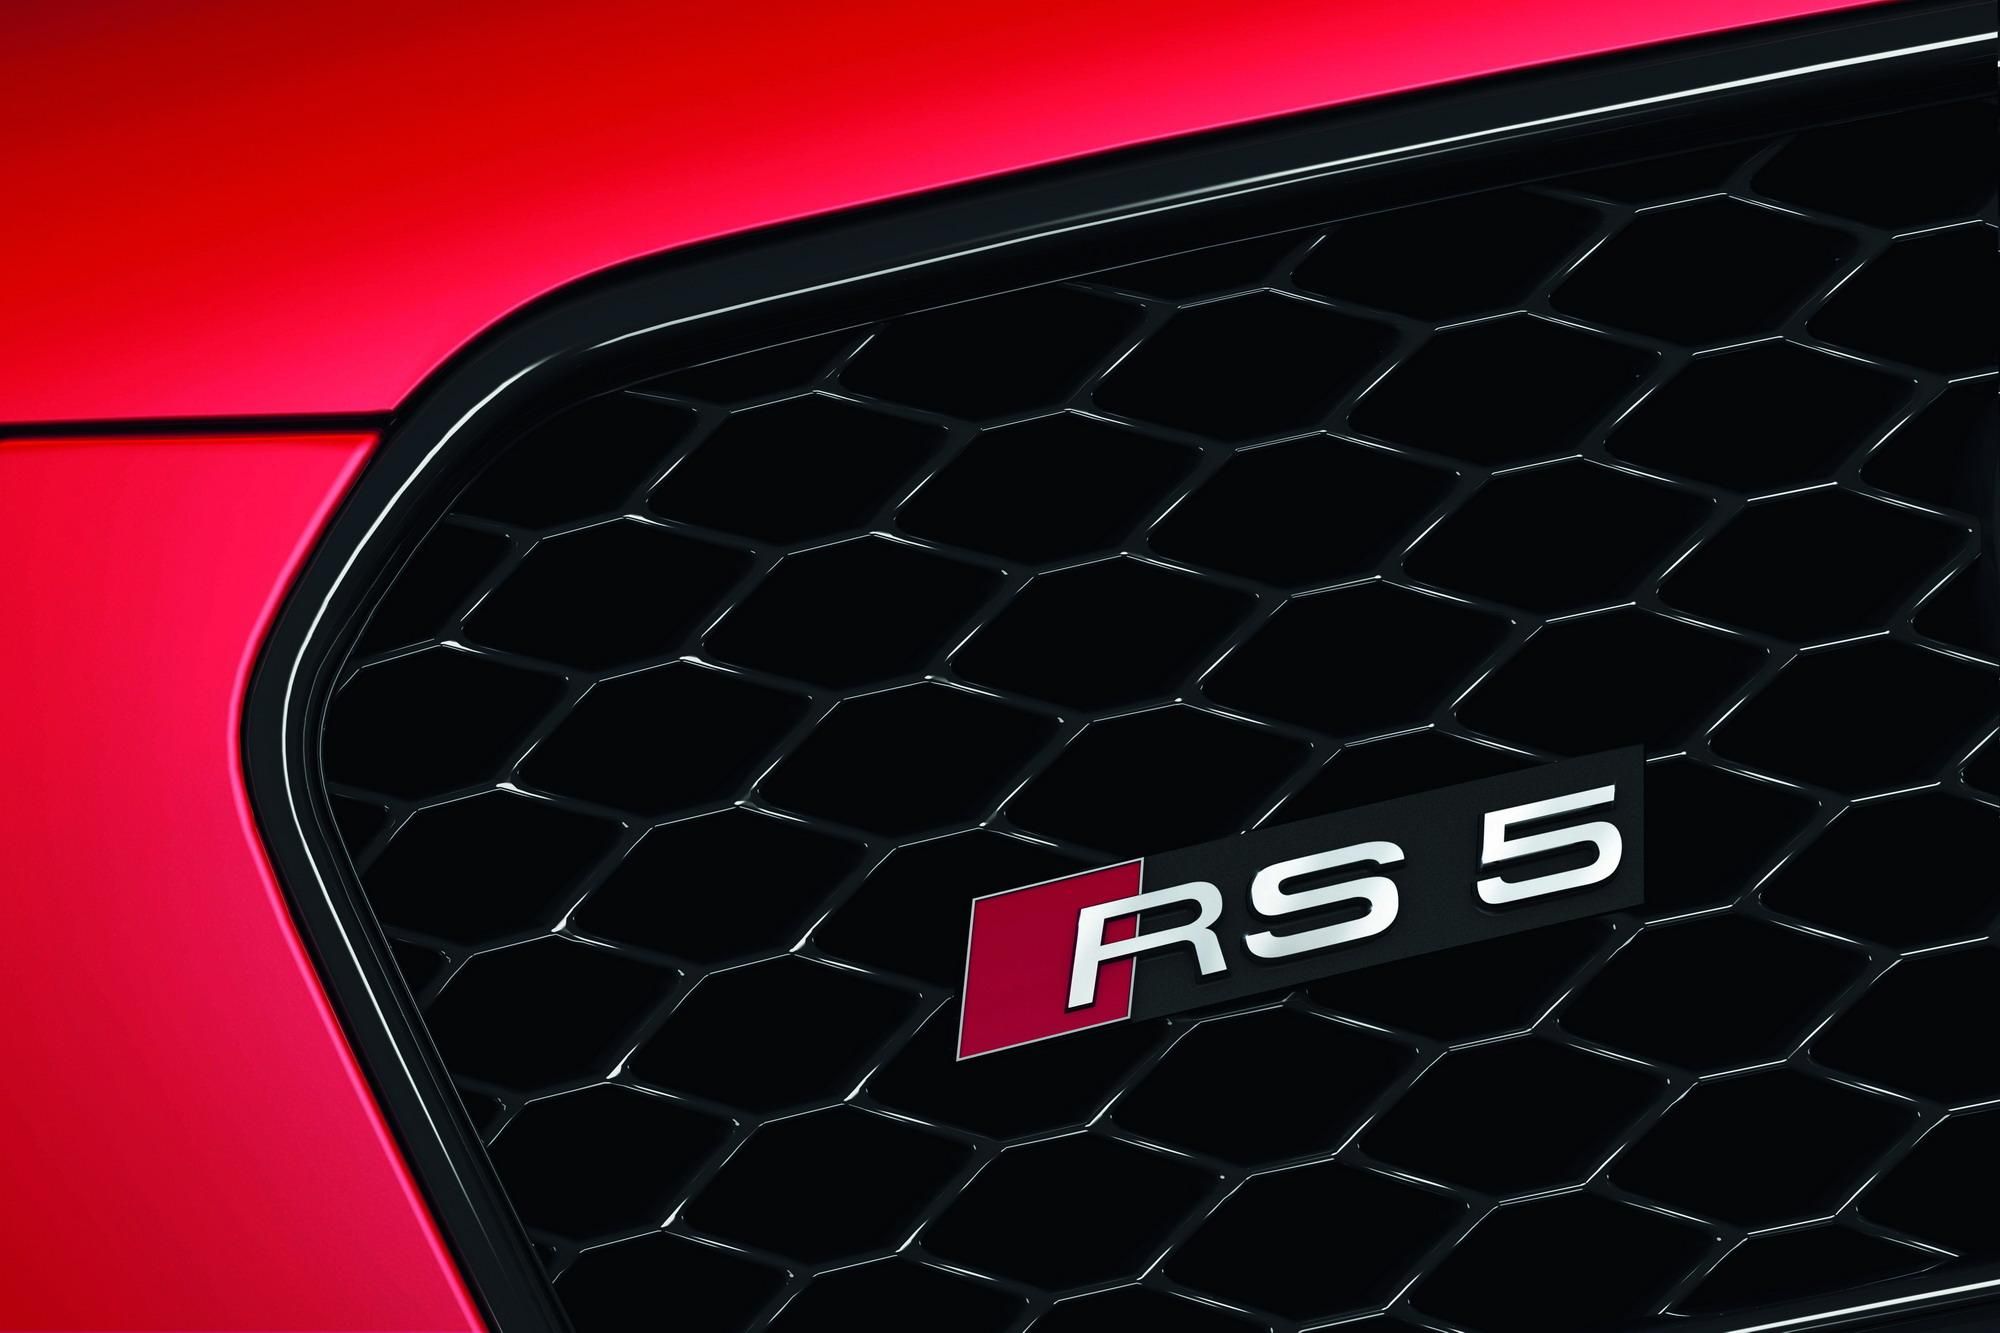 2012 Audi RS5